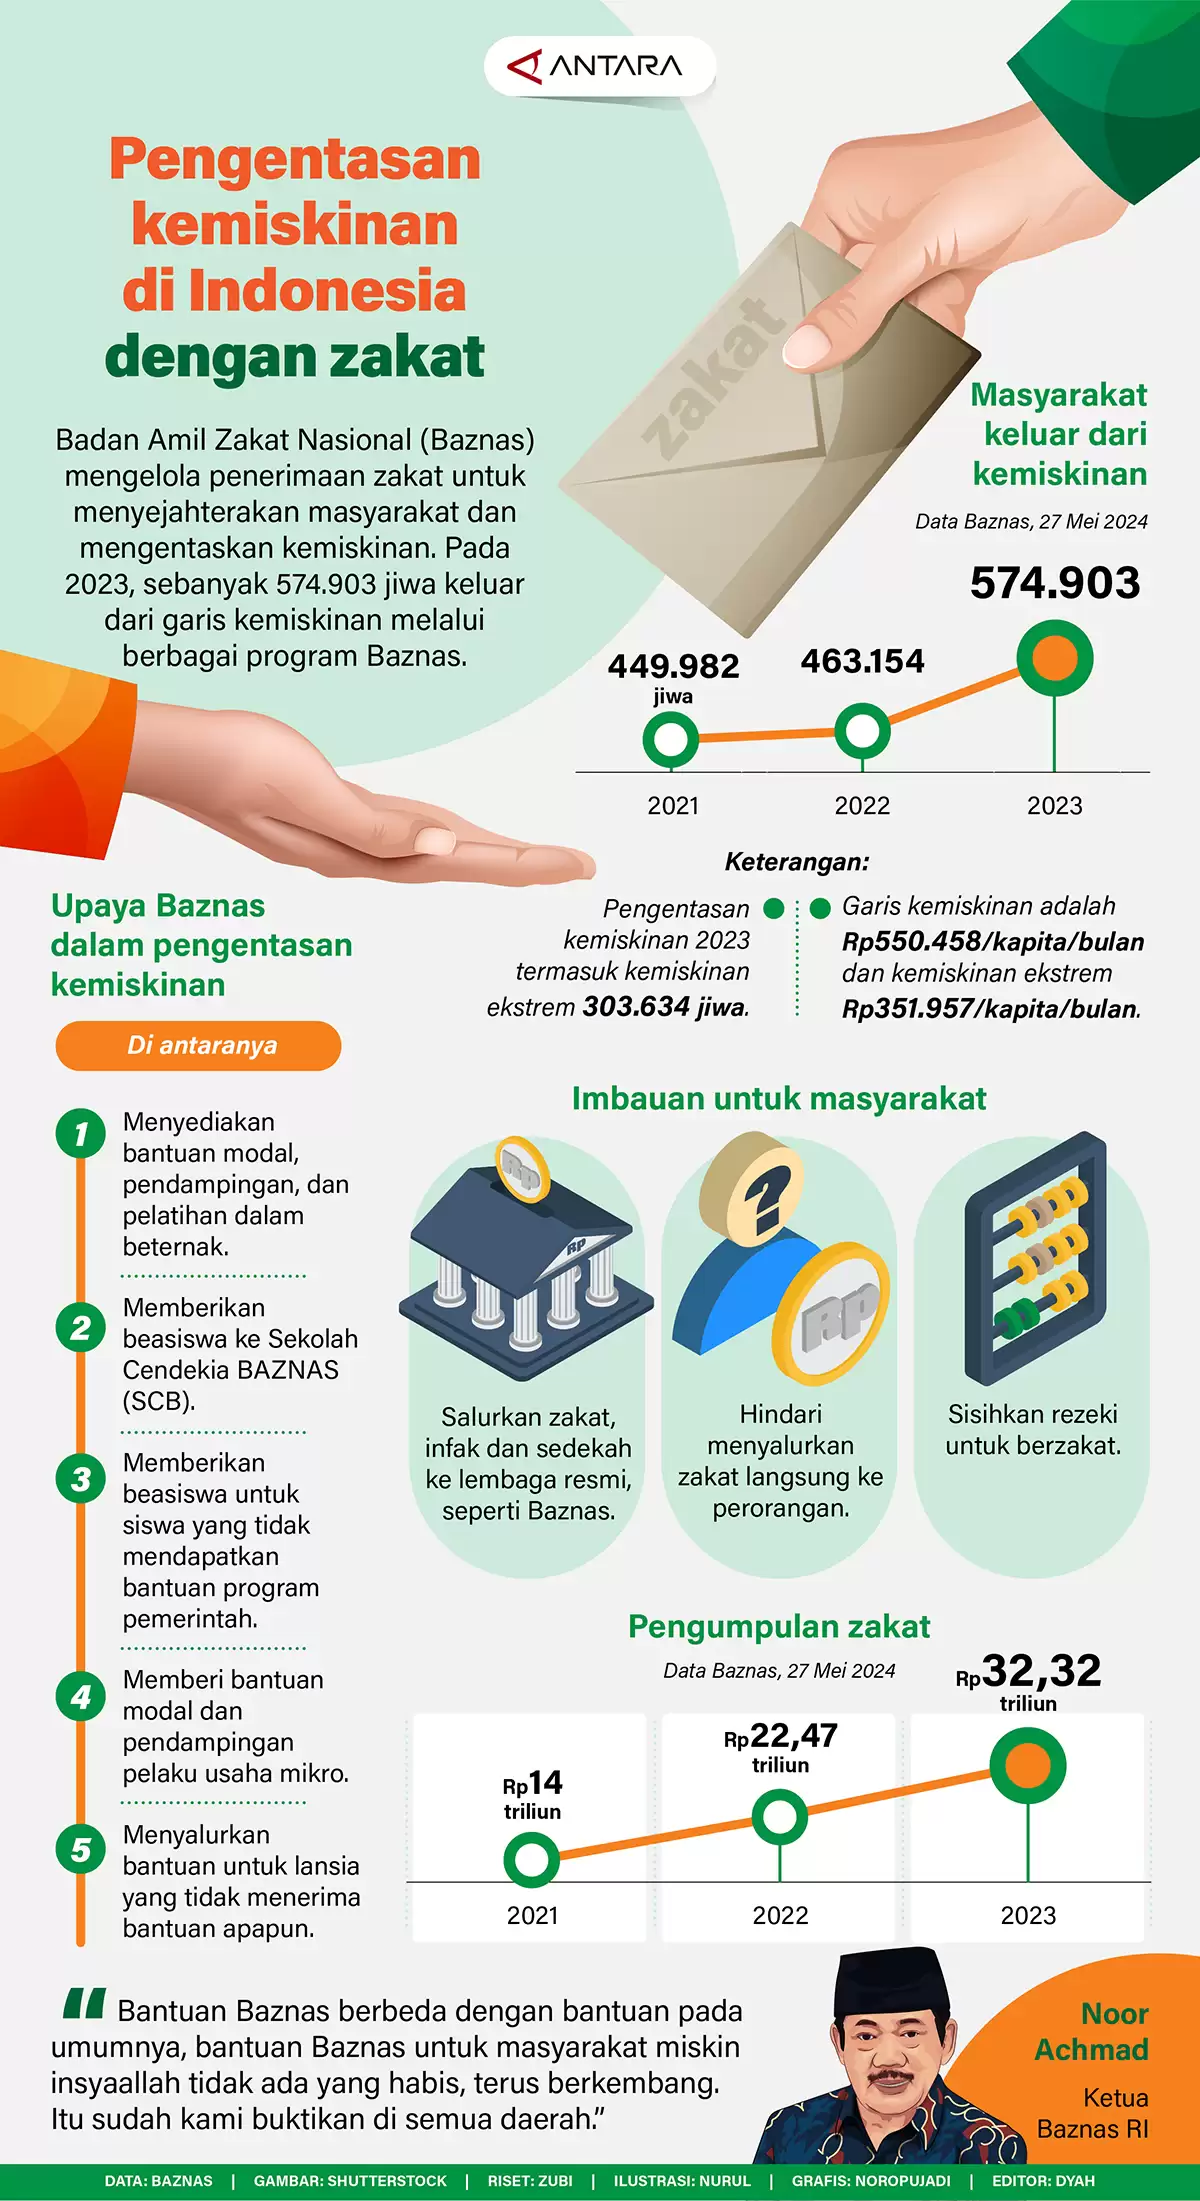 Pengentasan Kemiskinan di Indonesia Dengan Dakat